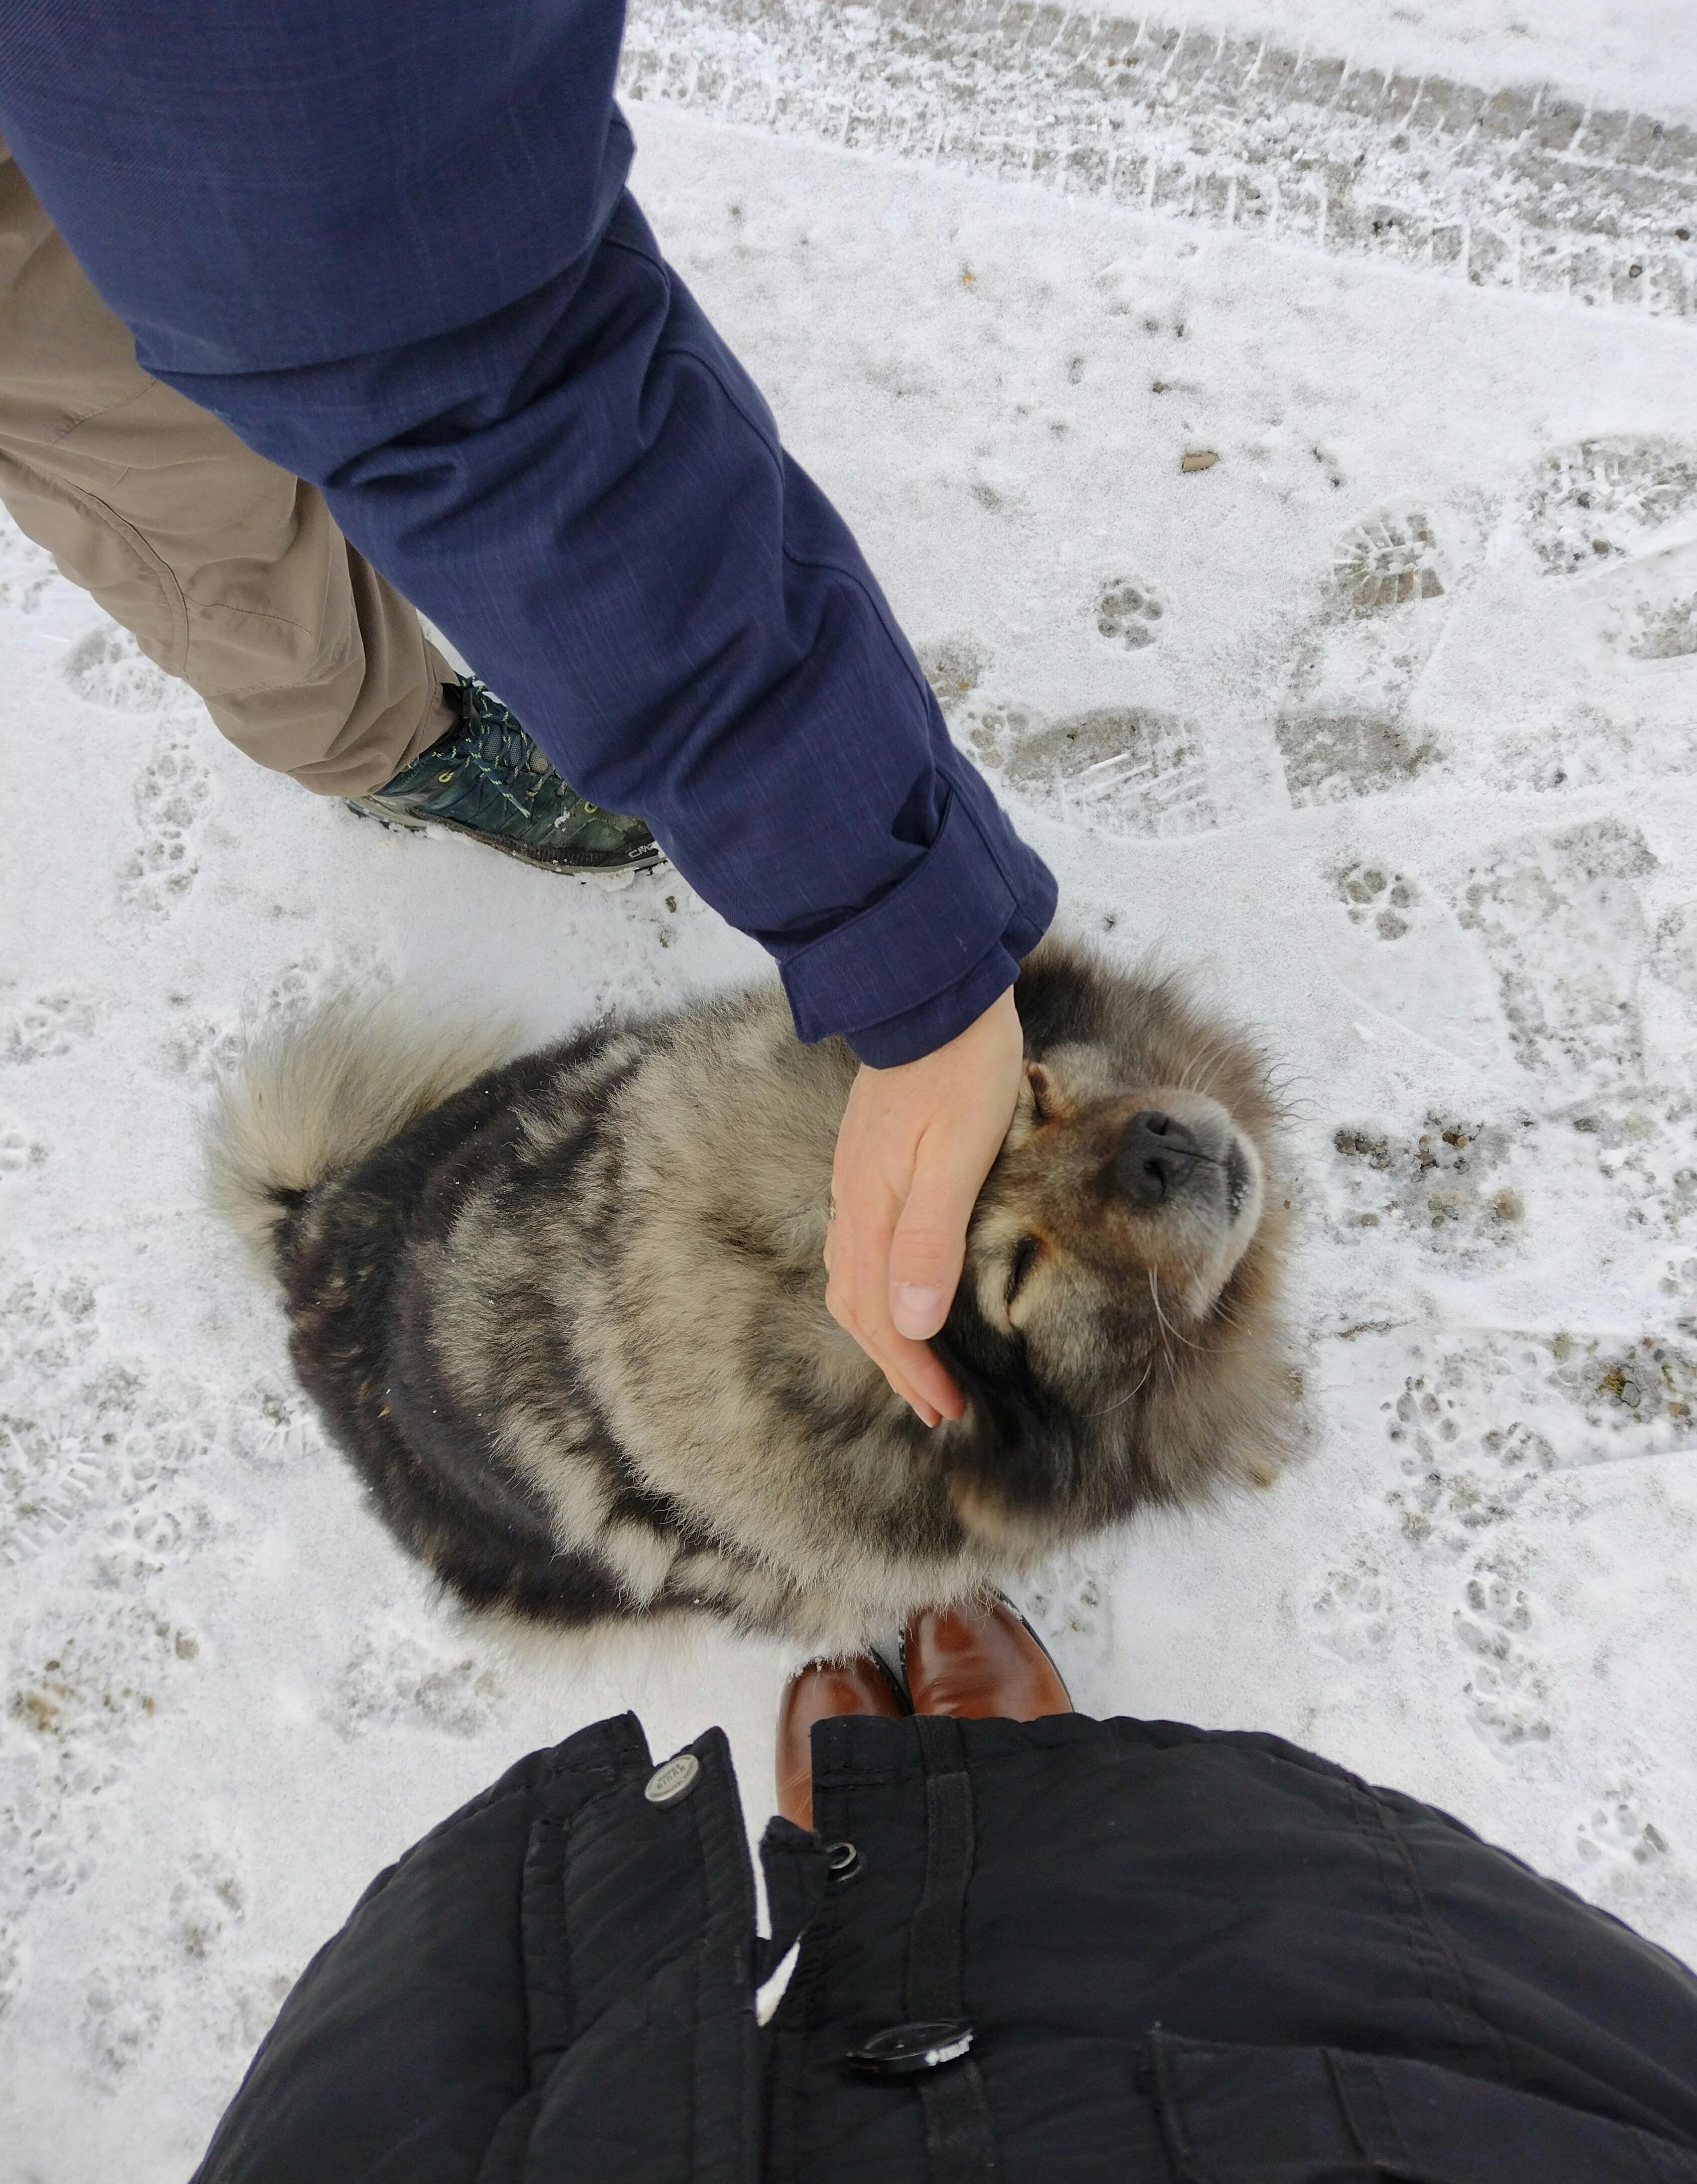 #hund #tier #winter #seeehrseeehrbissigerhund #schnee